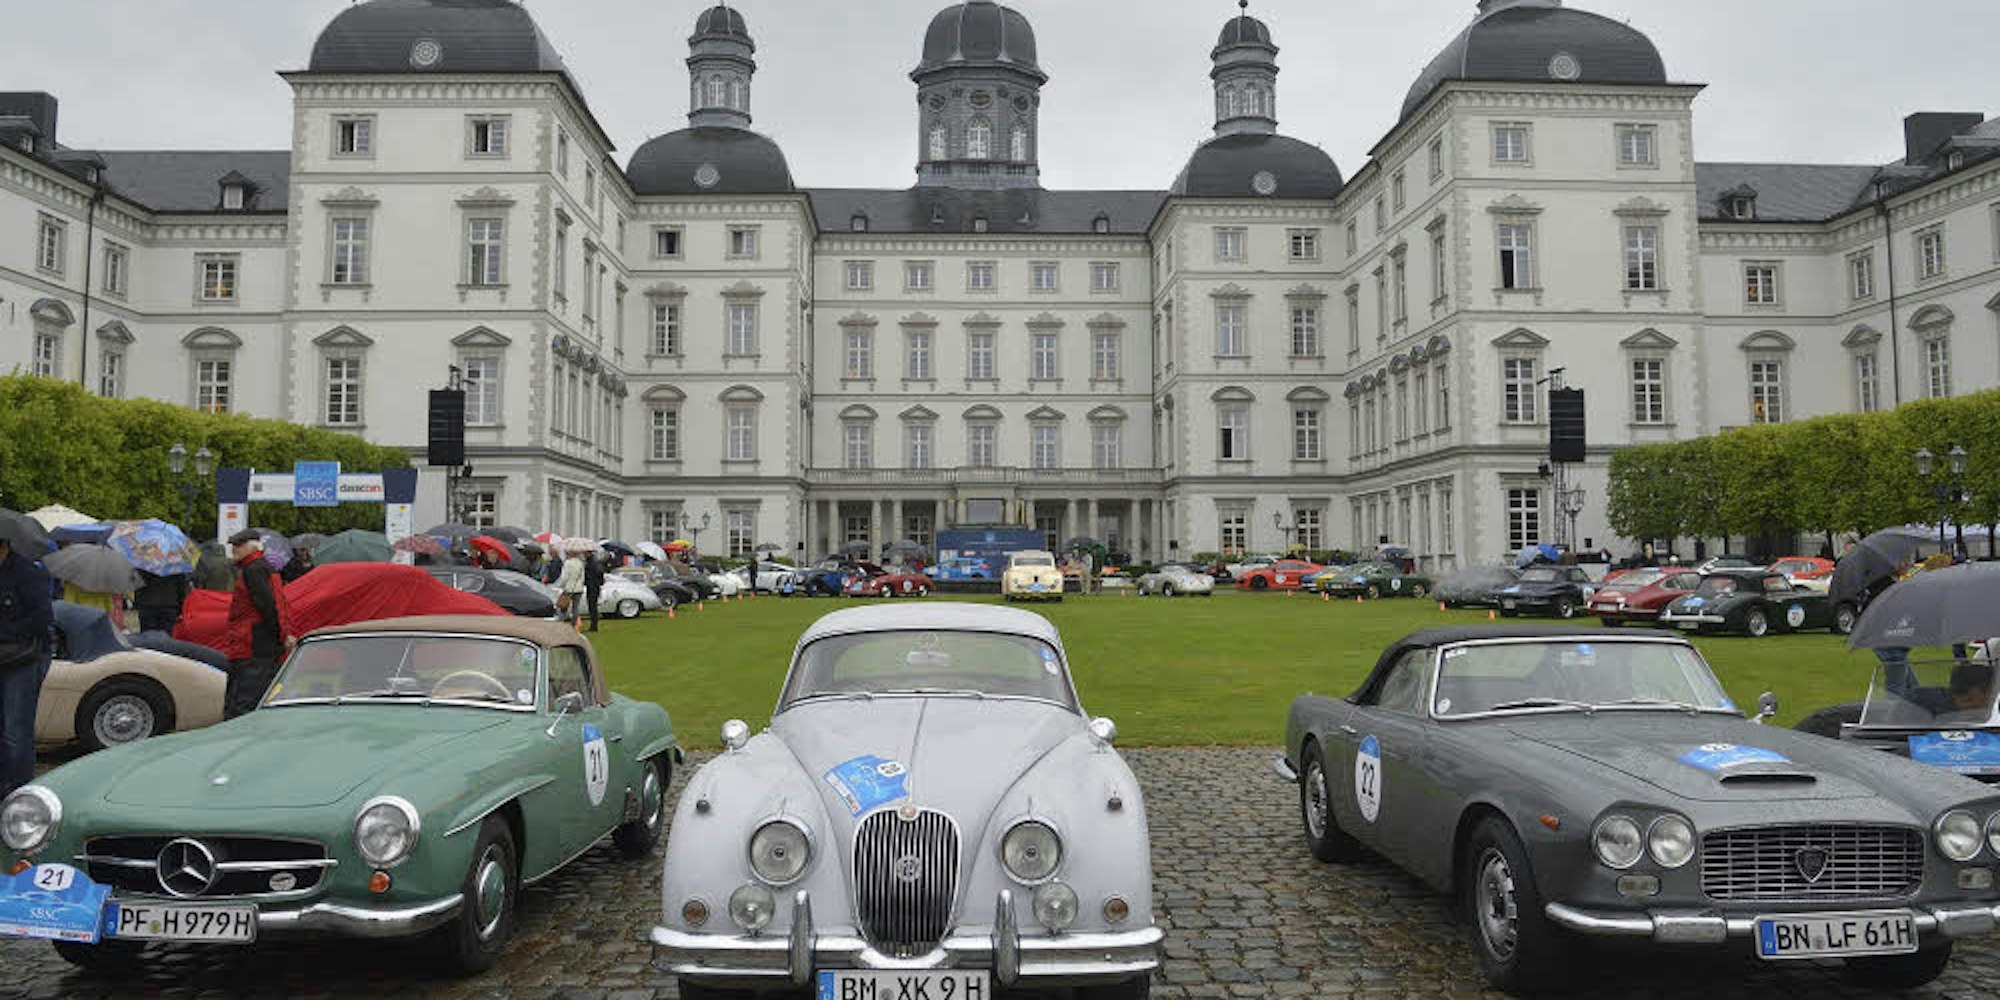 Prachtvolles Schloss, prachtvolle Sportwagen: Diese Kombination gab es am Wochenende zum ersten Mal.